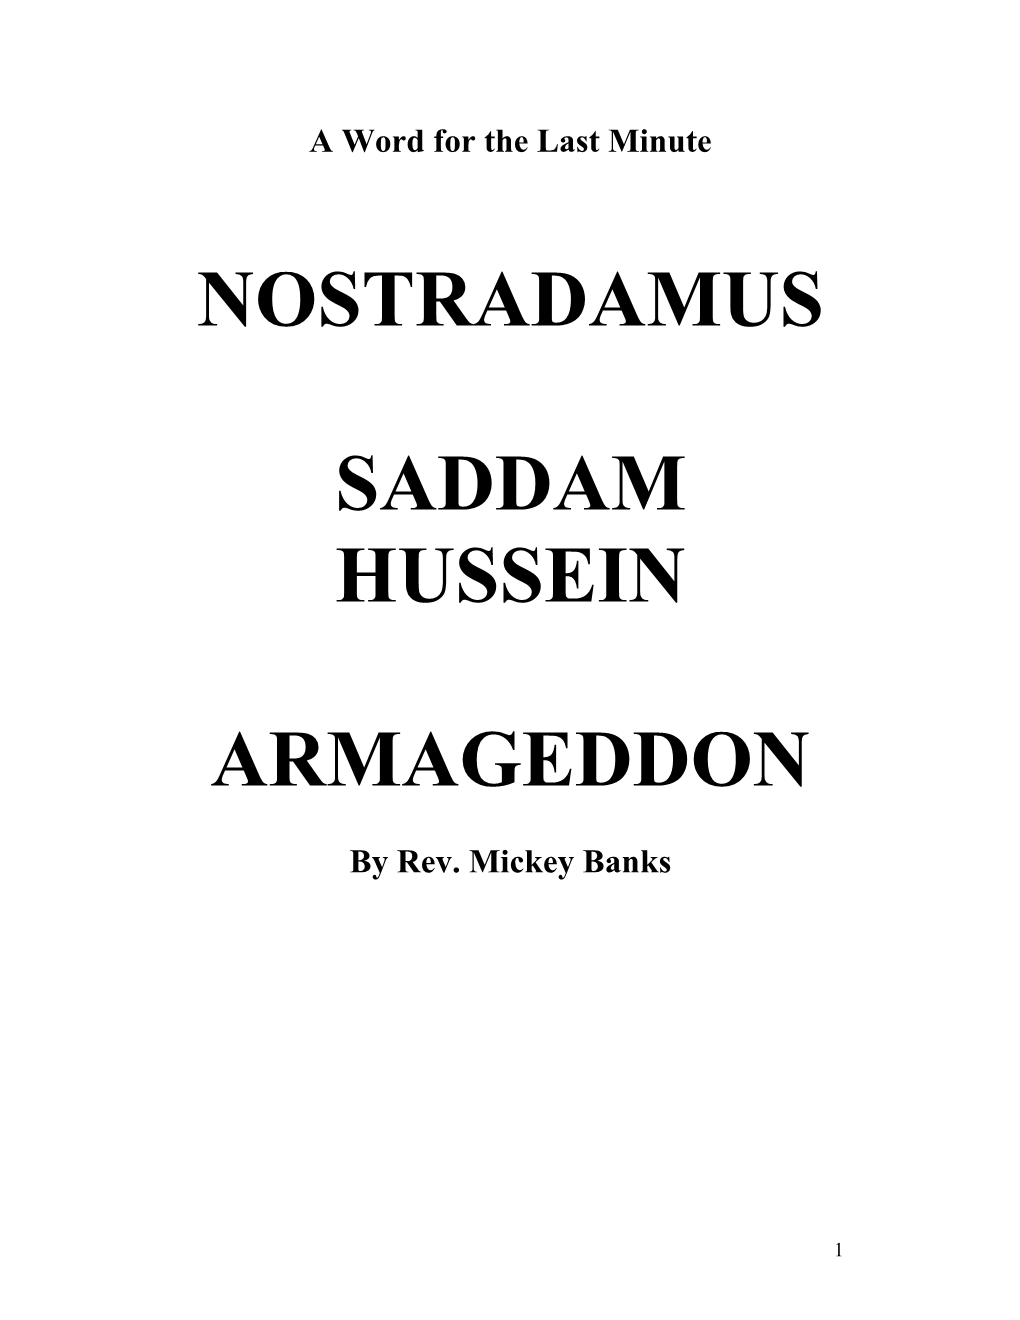 Nostradamus Saddam Hussein Armageddon